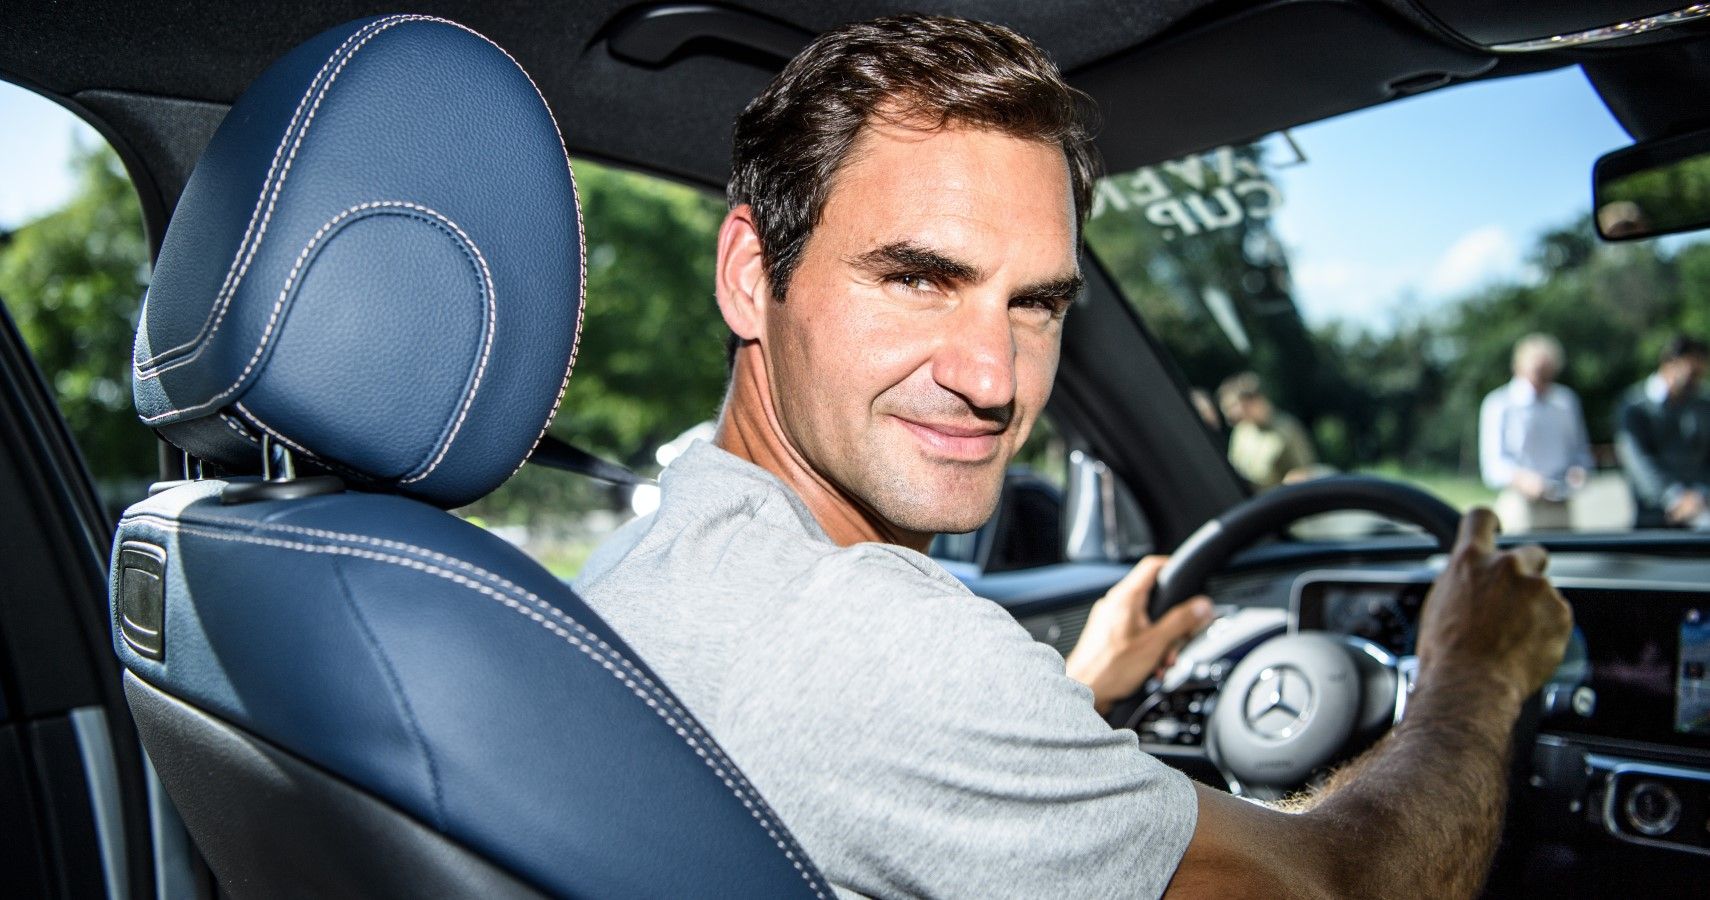 Roger Federer loves his Mercedes-Benz cars